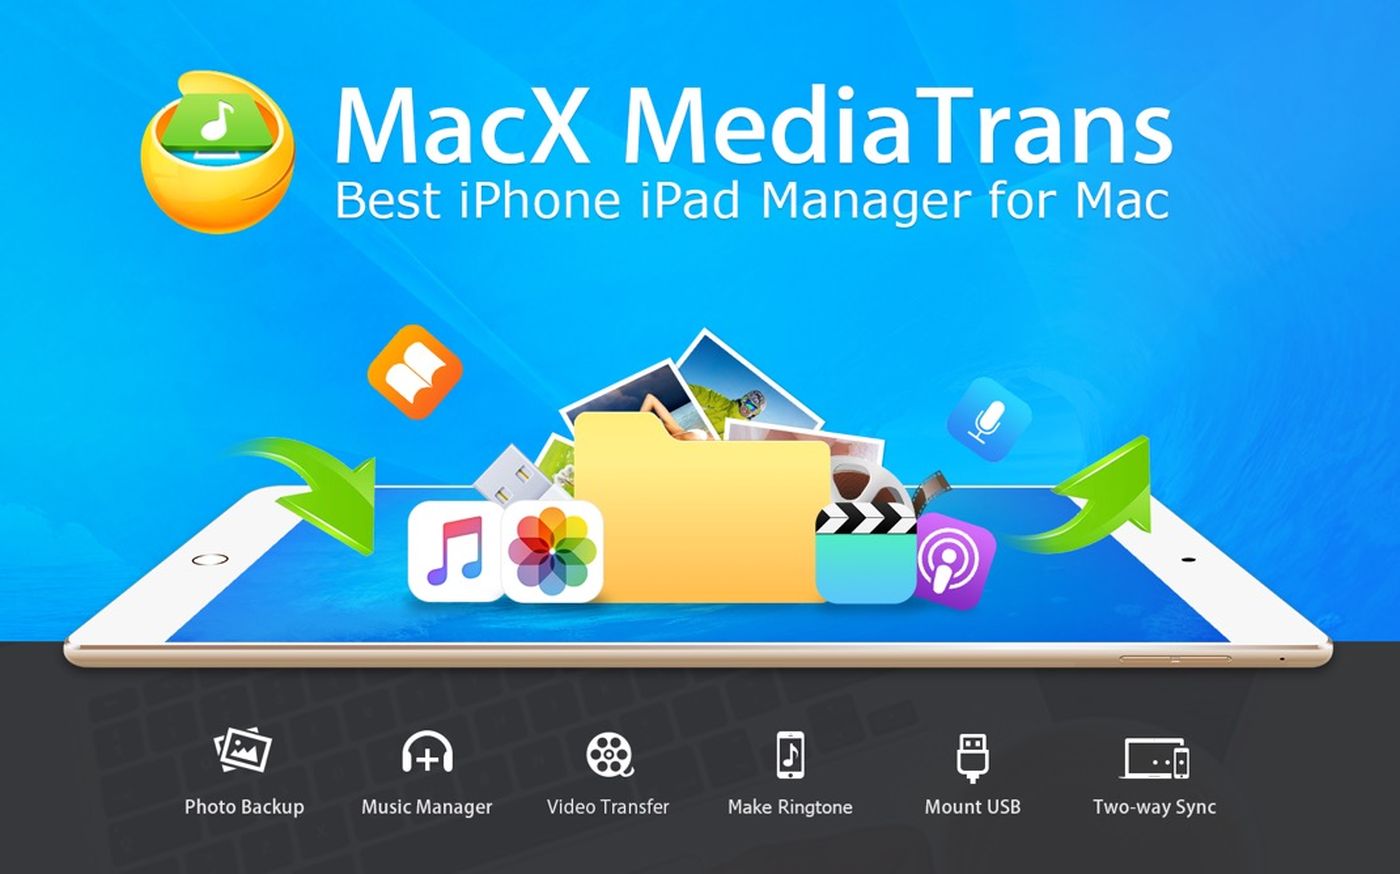 macx mediatrans 3.2 full version